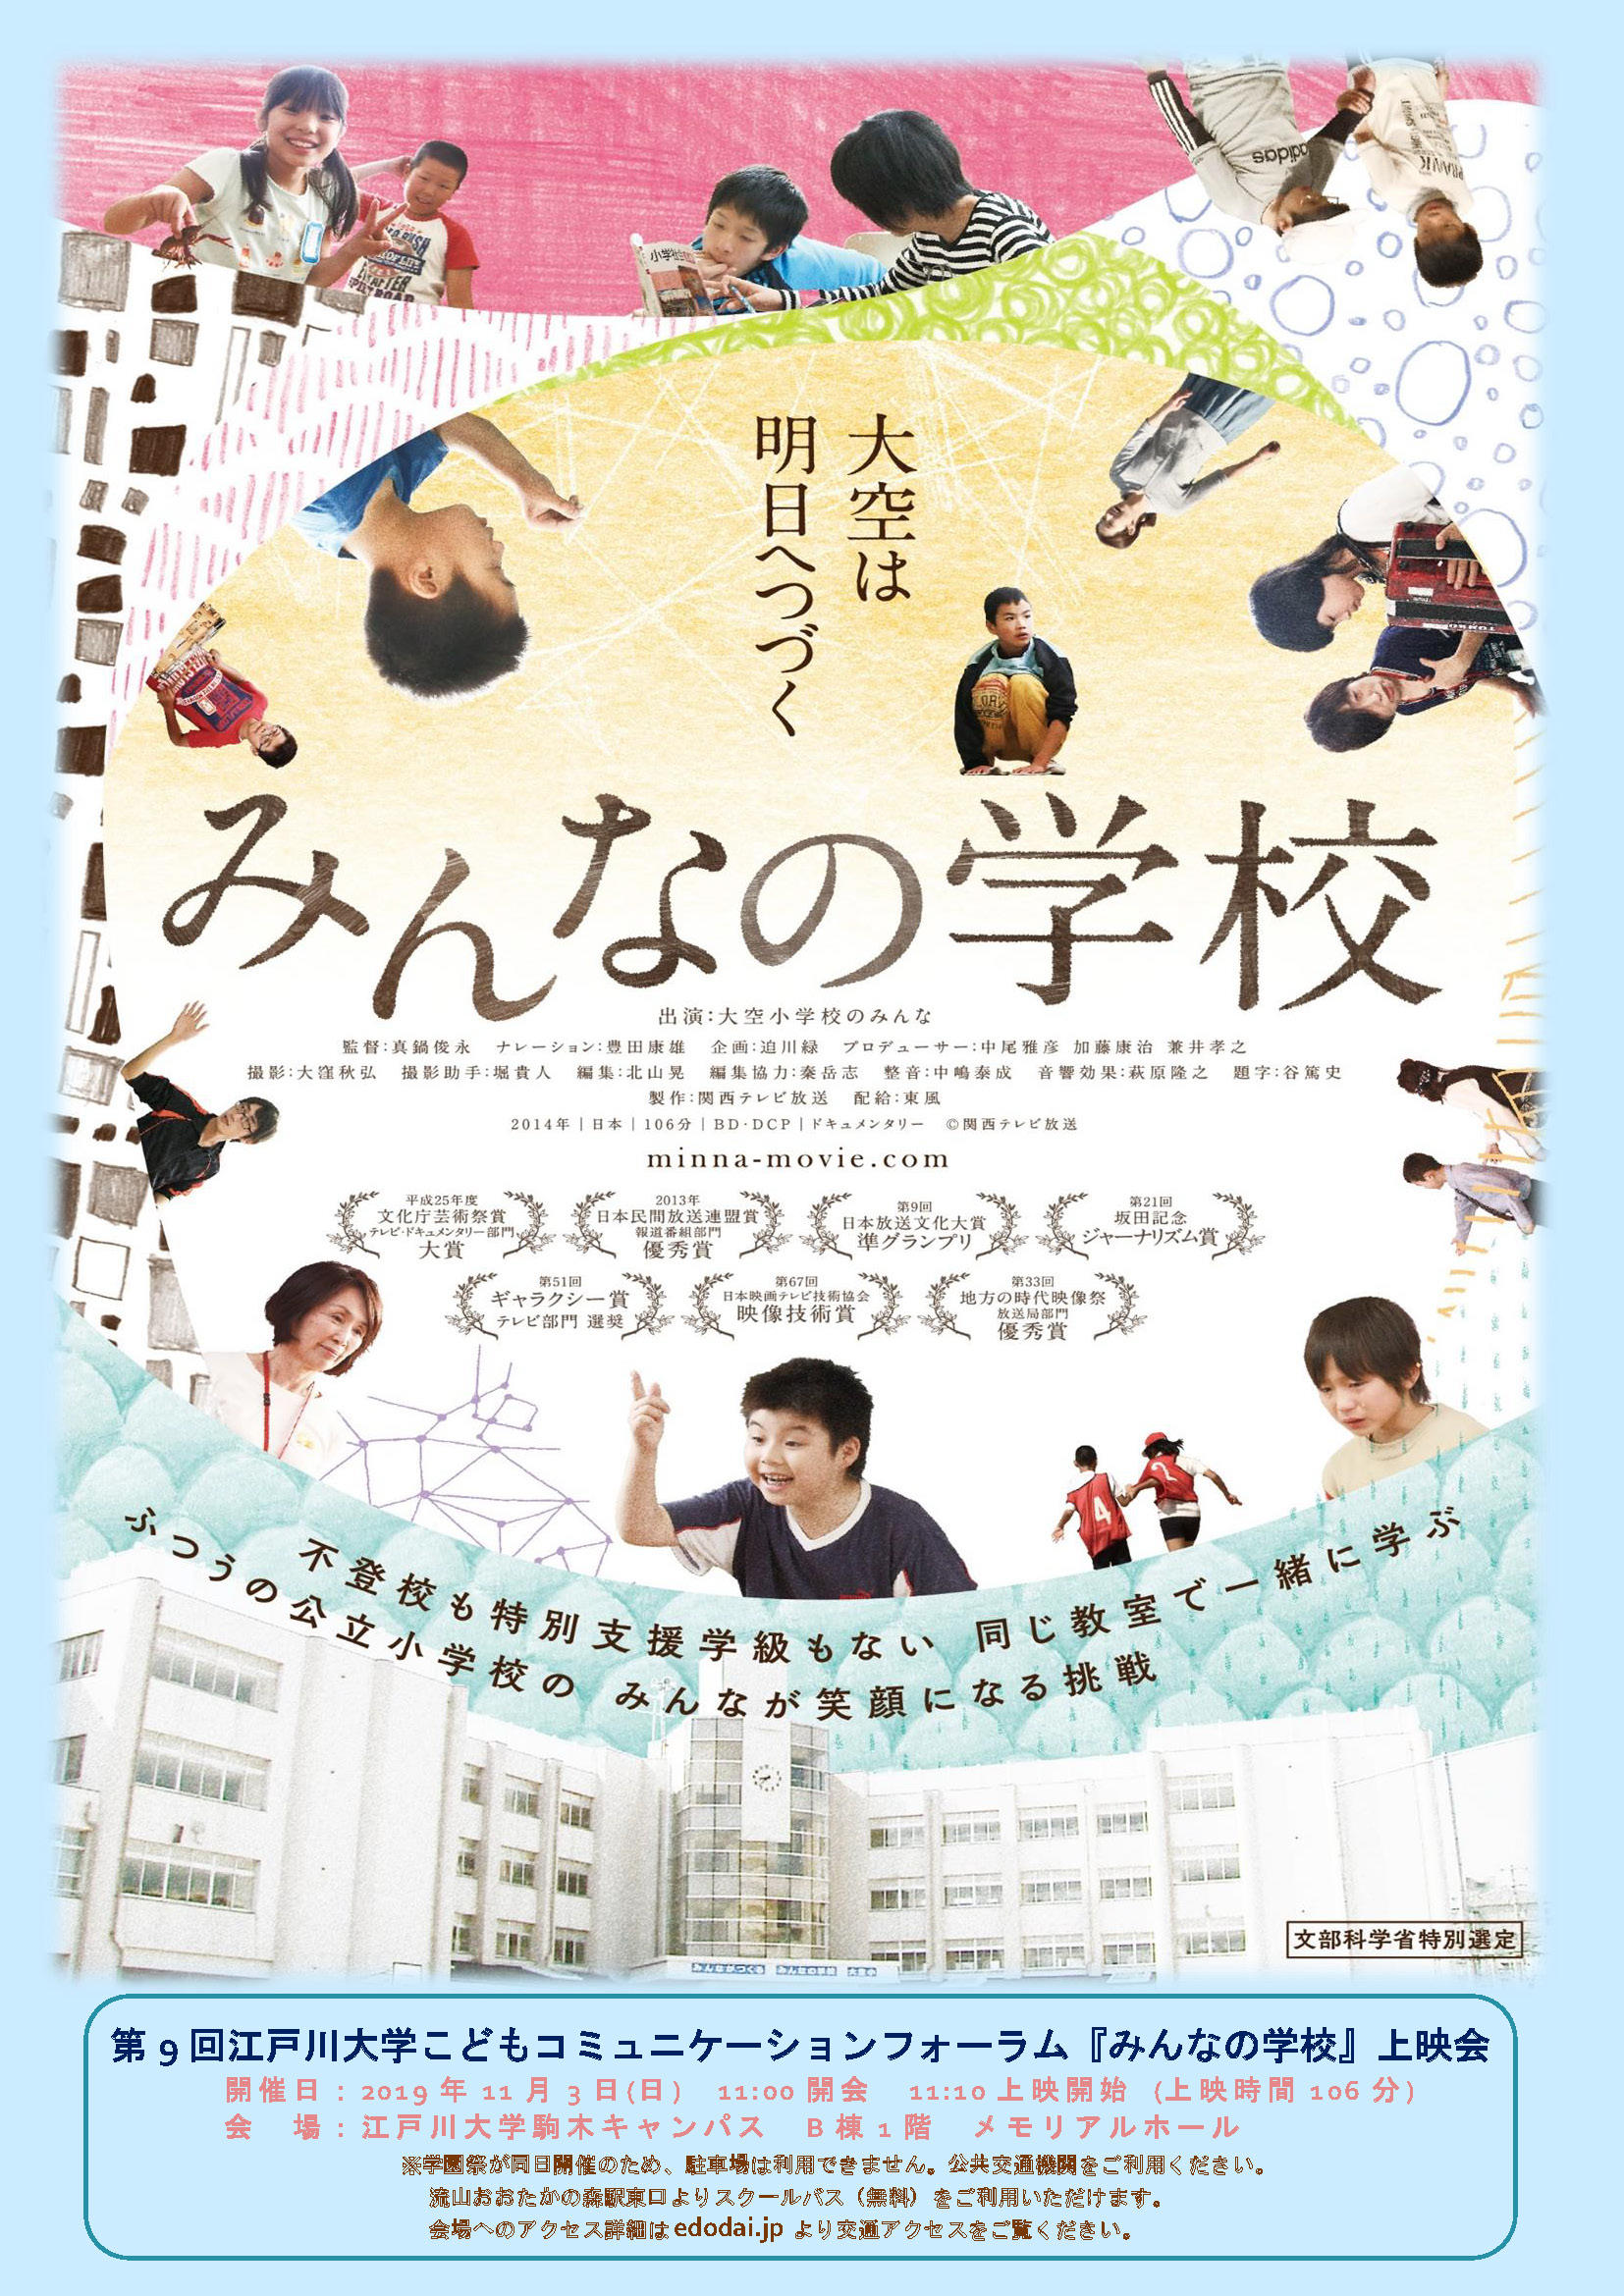 江戸川大学こどもコミュニケーション研究所が11月3日に映画『みんなの学校』の上映会を開催 -- 第9回こどもコミュニケーションフォーラム